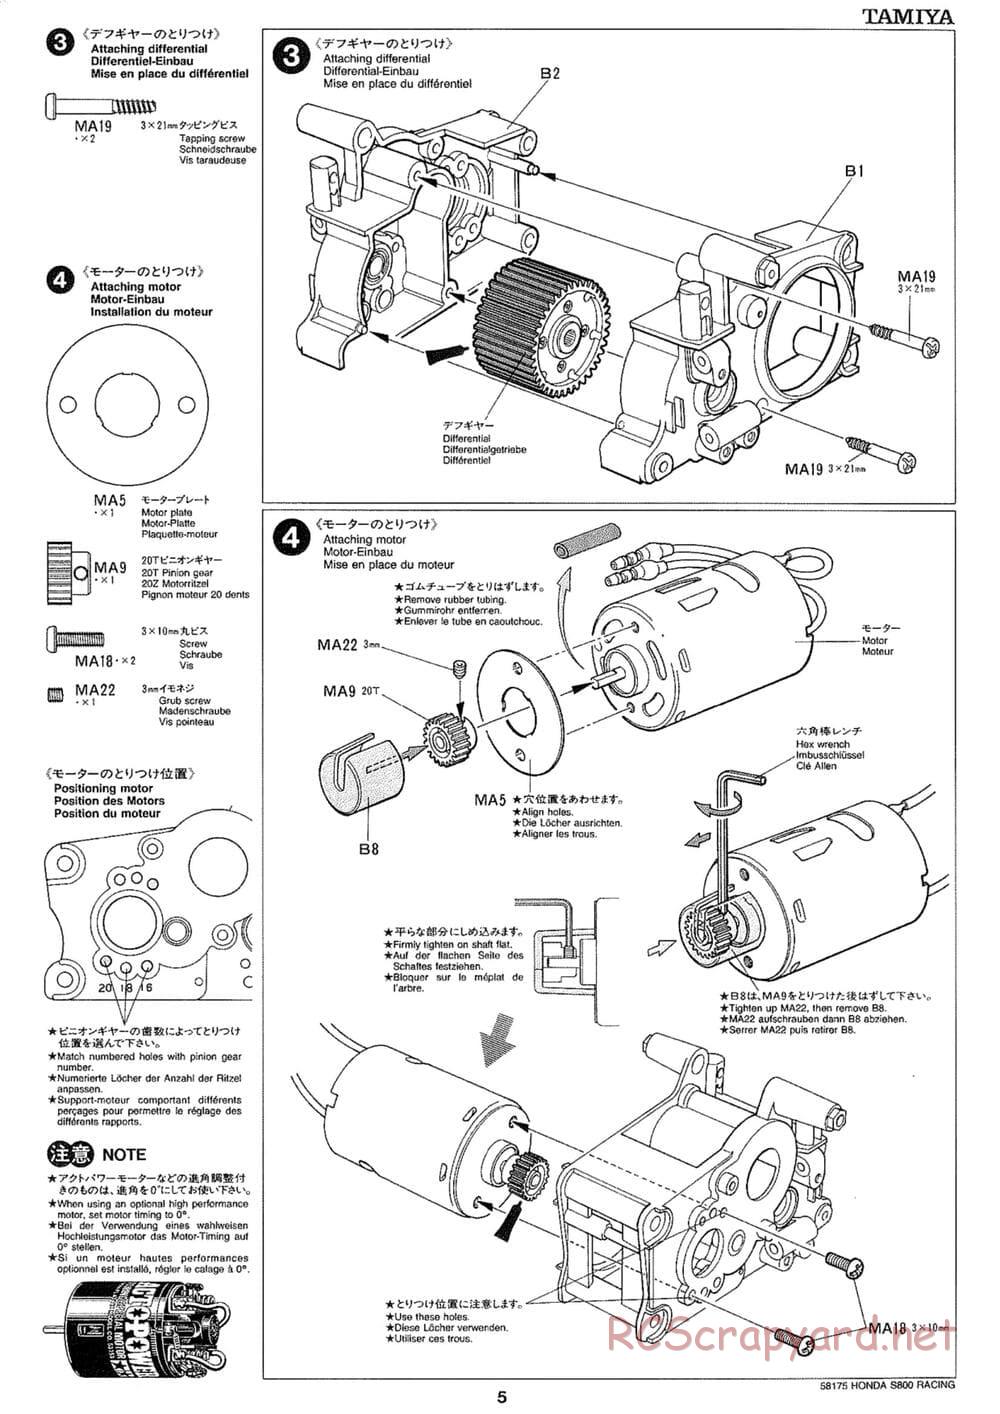 Tamiya - Honda S800 Racing - M02 Chassis - Manual - Page 5